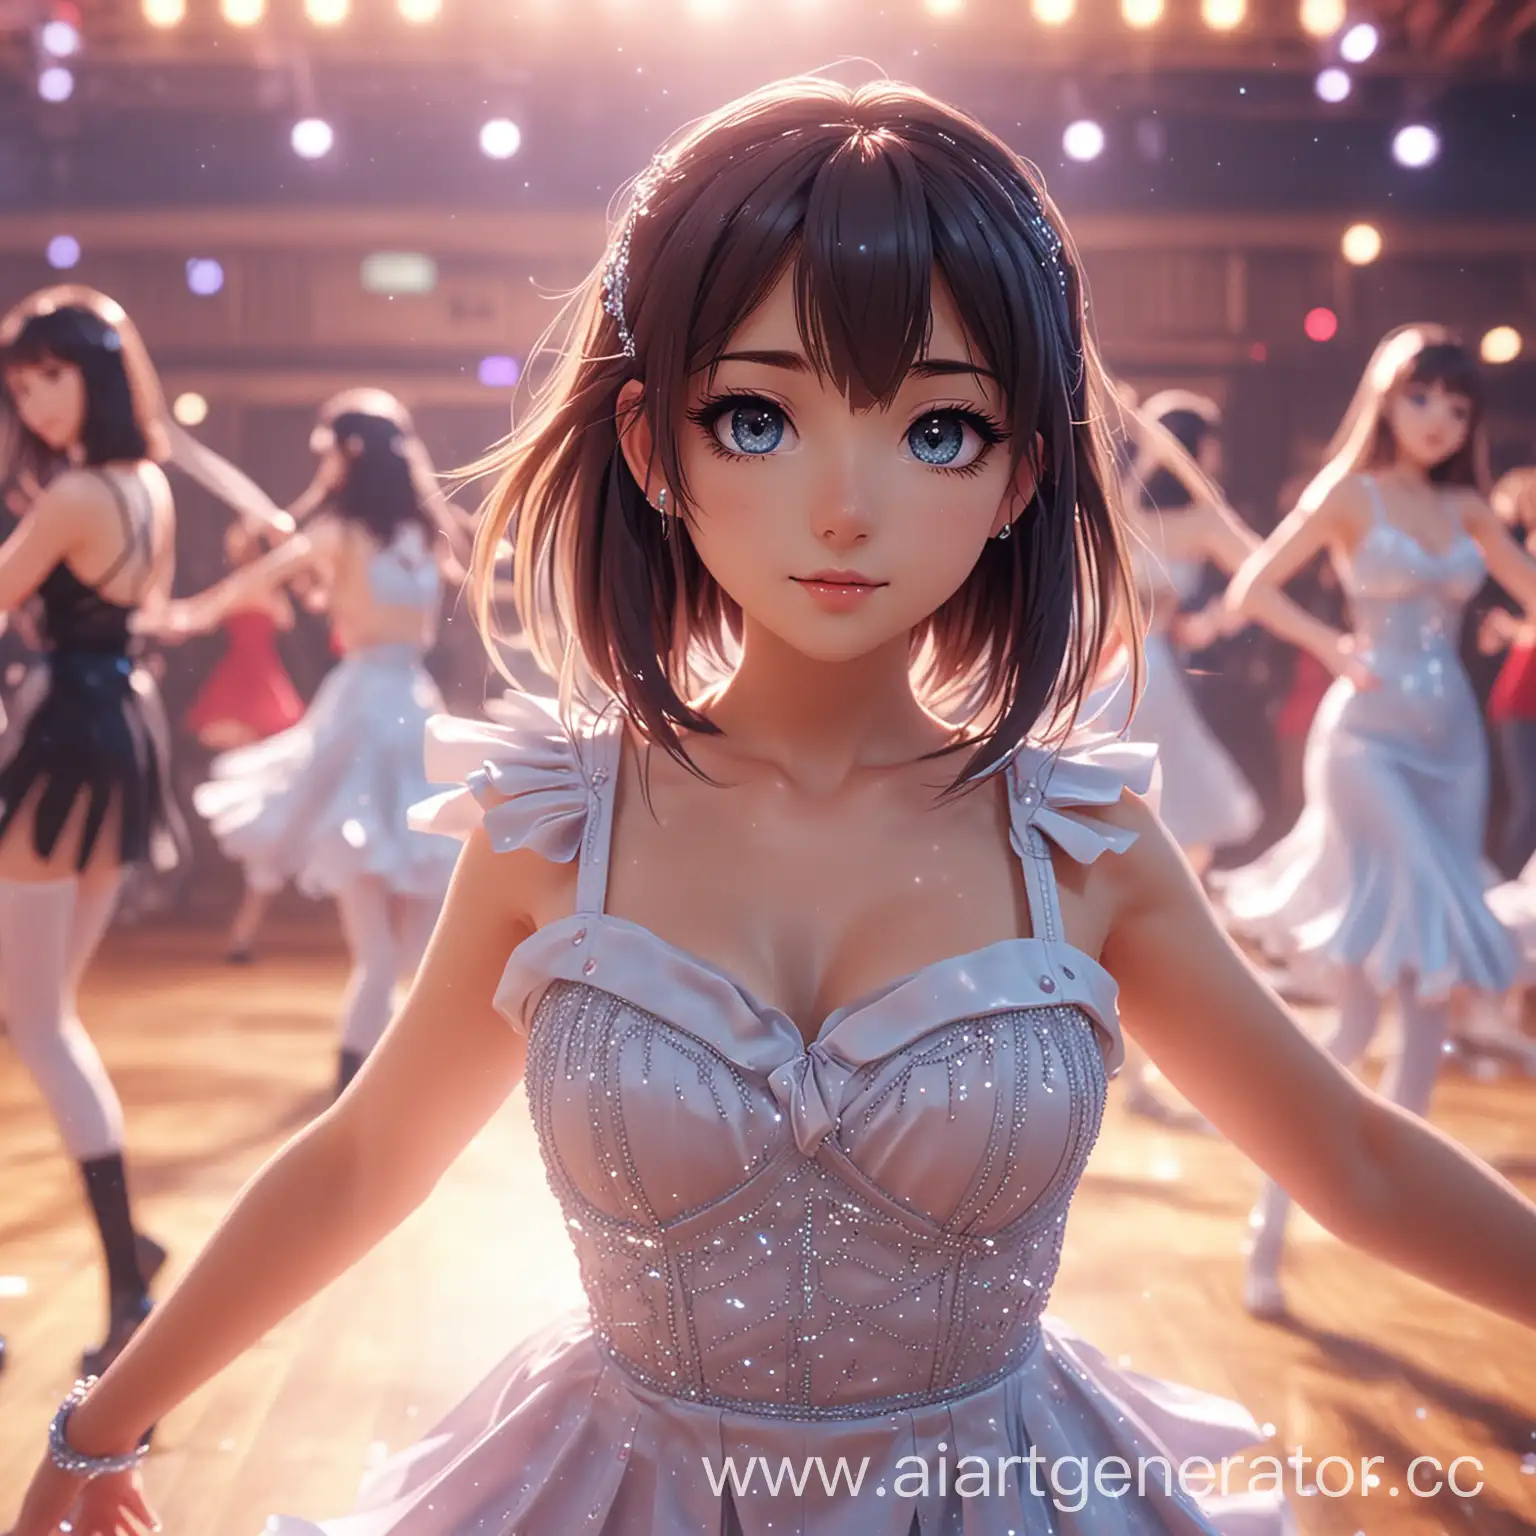 Anime-Style-Girl-Dancing-on-the-8K-Dance-Floor-with-Mesmerizing-Eyes